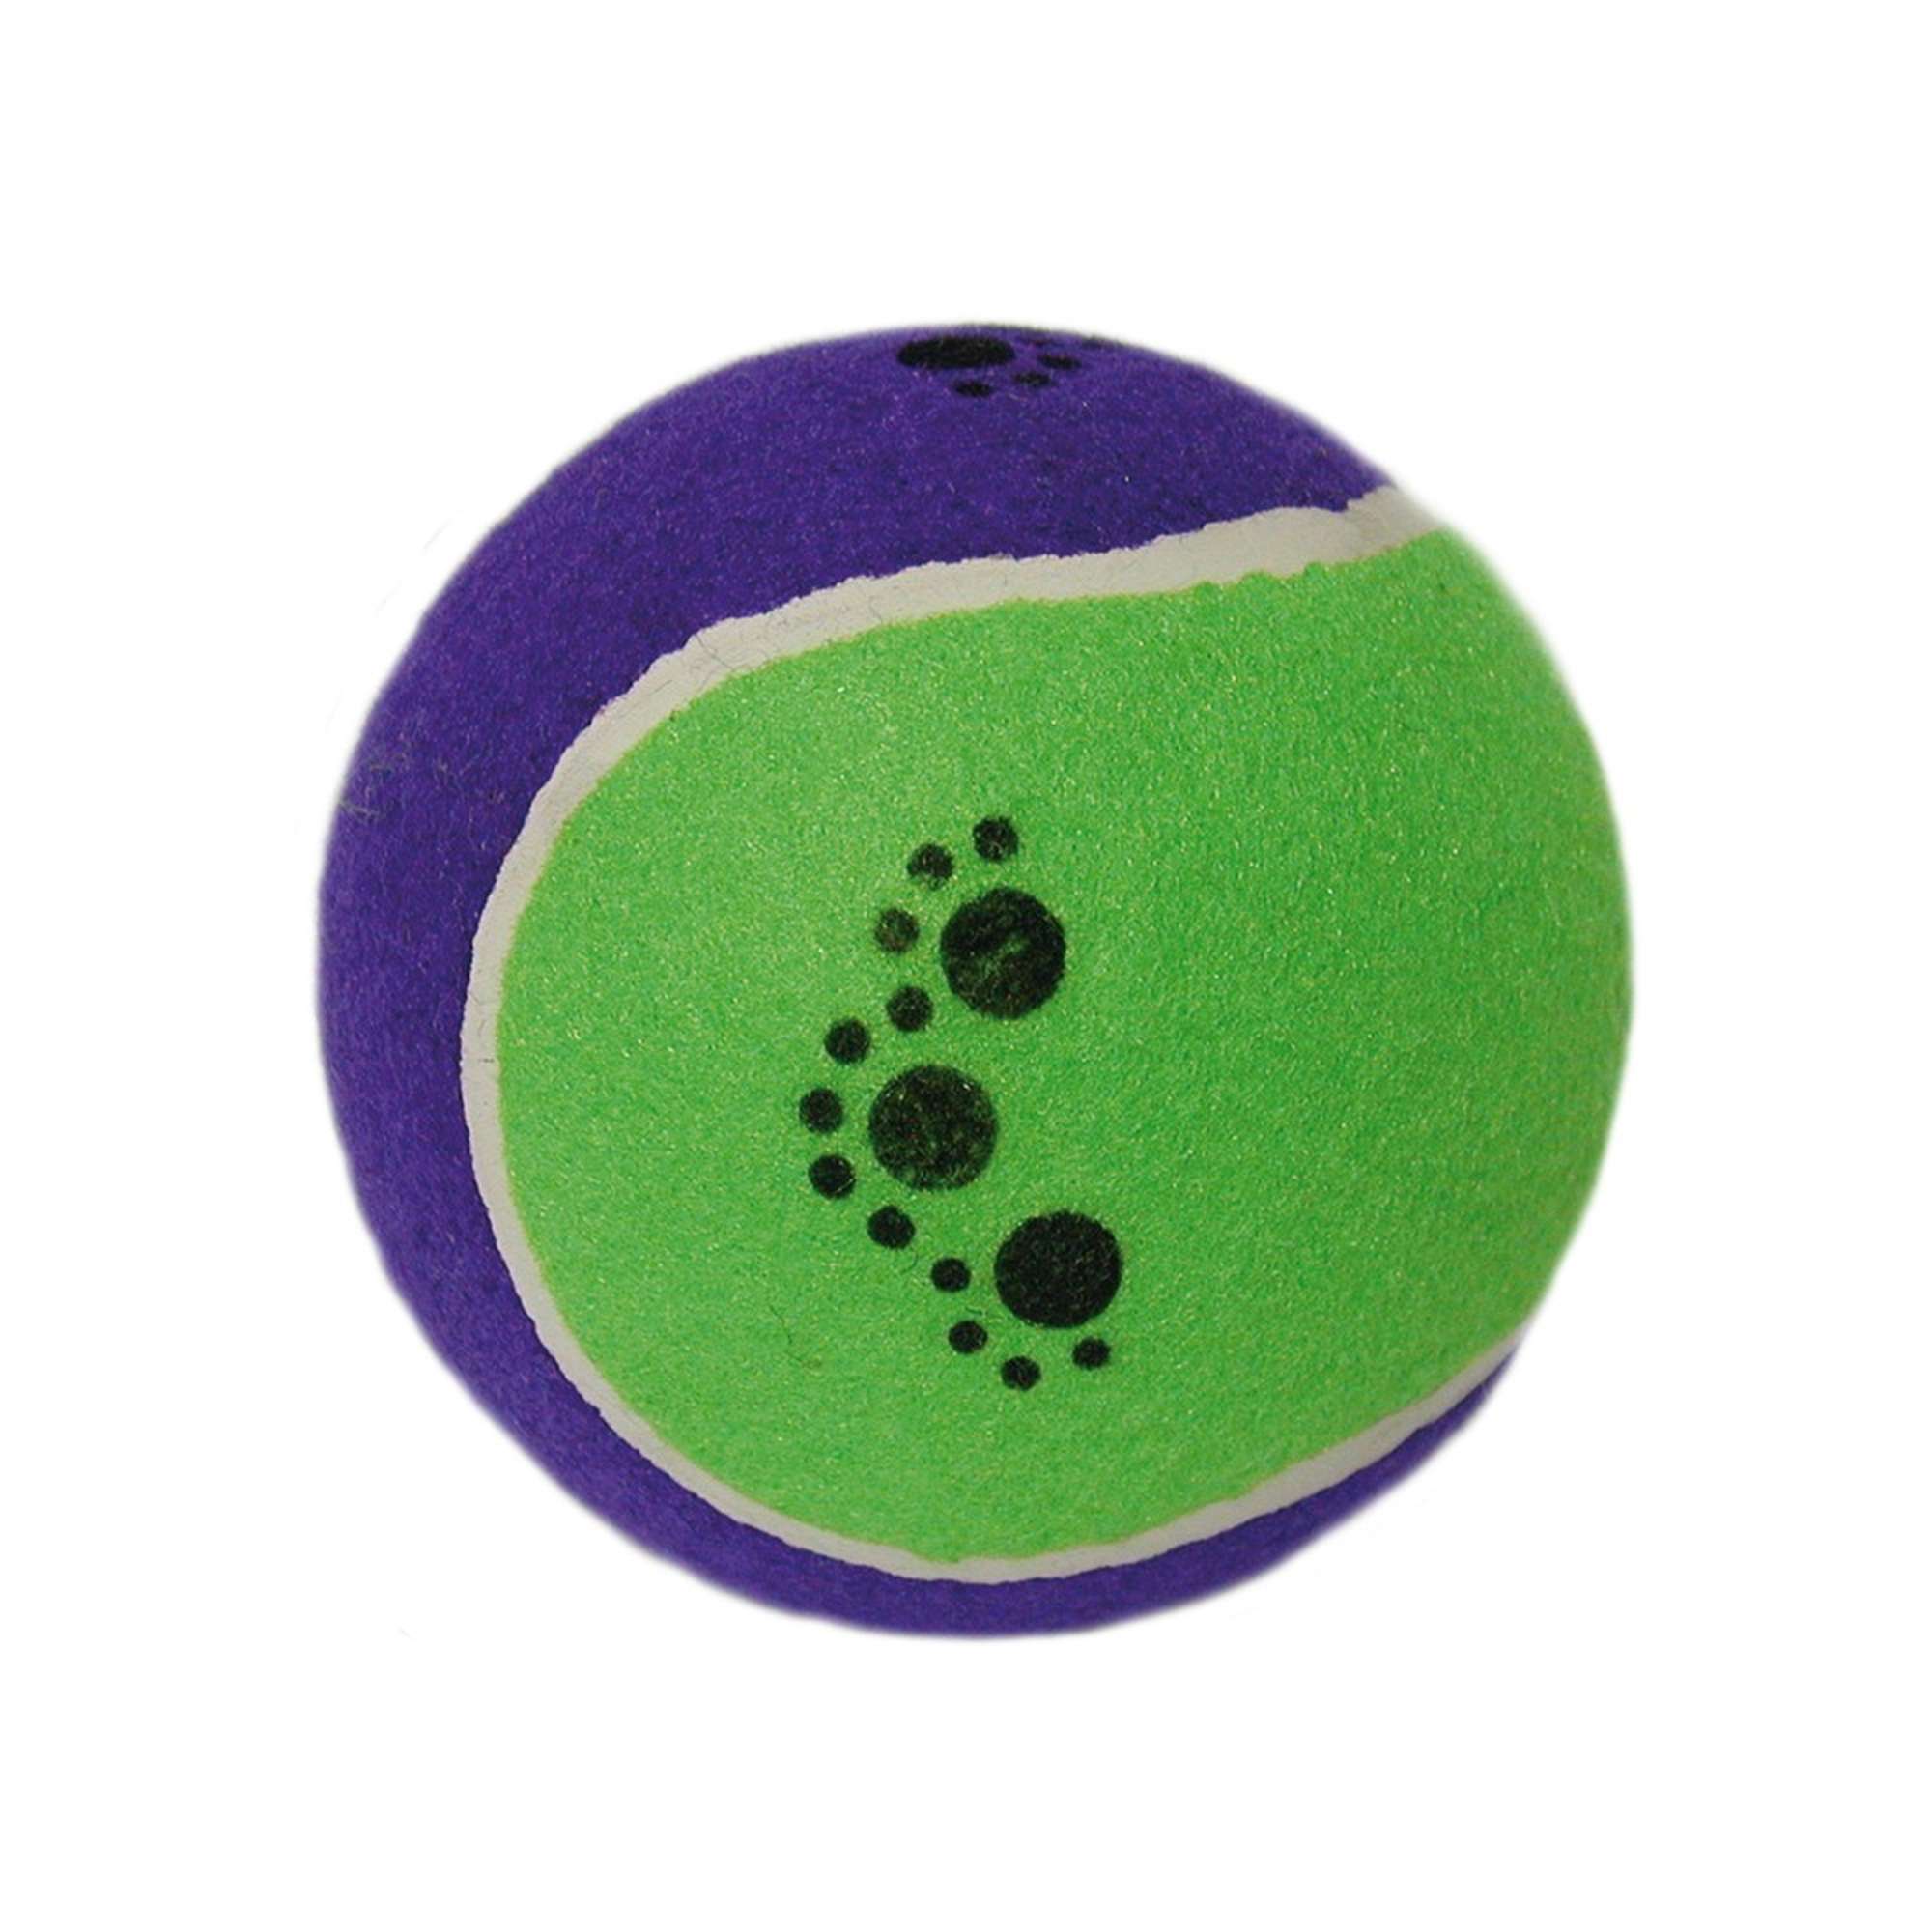 Pelotas de tenis para perros, paquete de 6 juguetes para perros, pelotas de  tenis para mascotas para perros grandes y cachorros, pelota interactiva